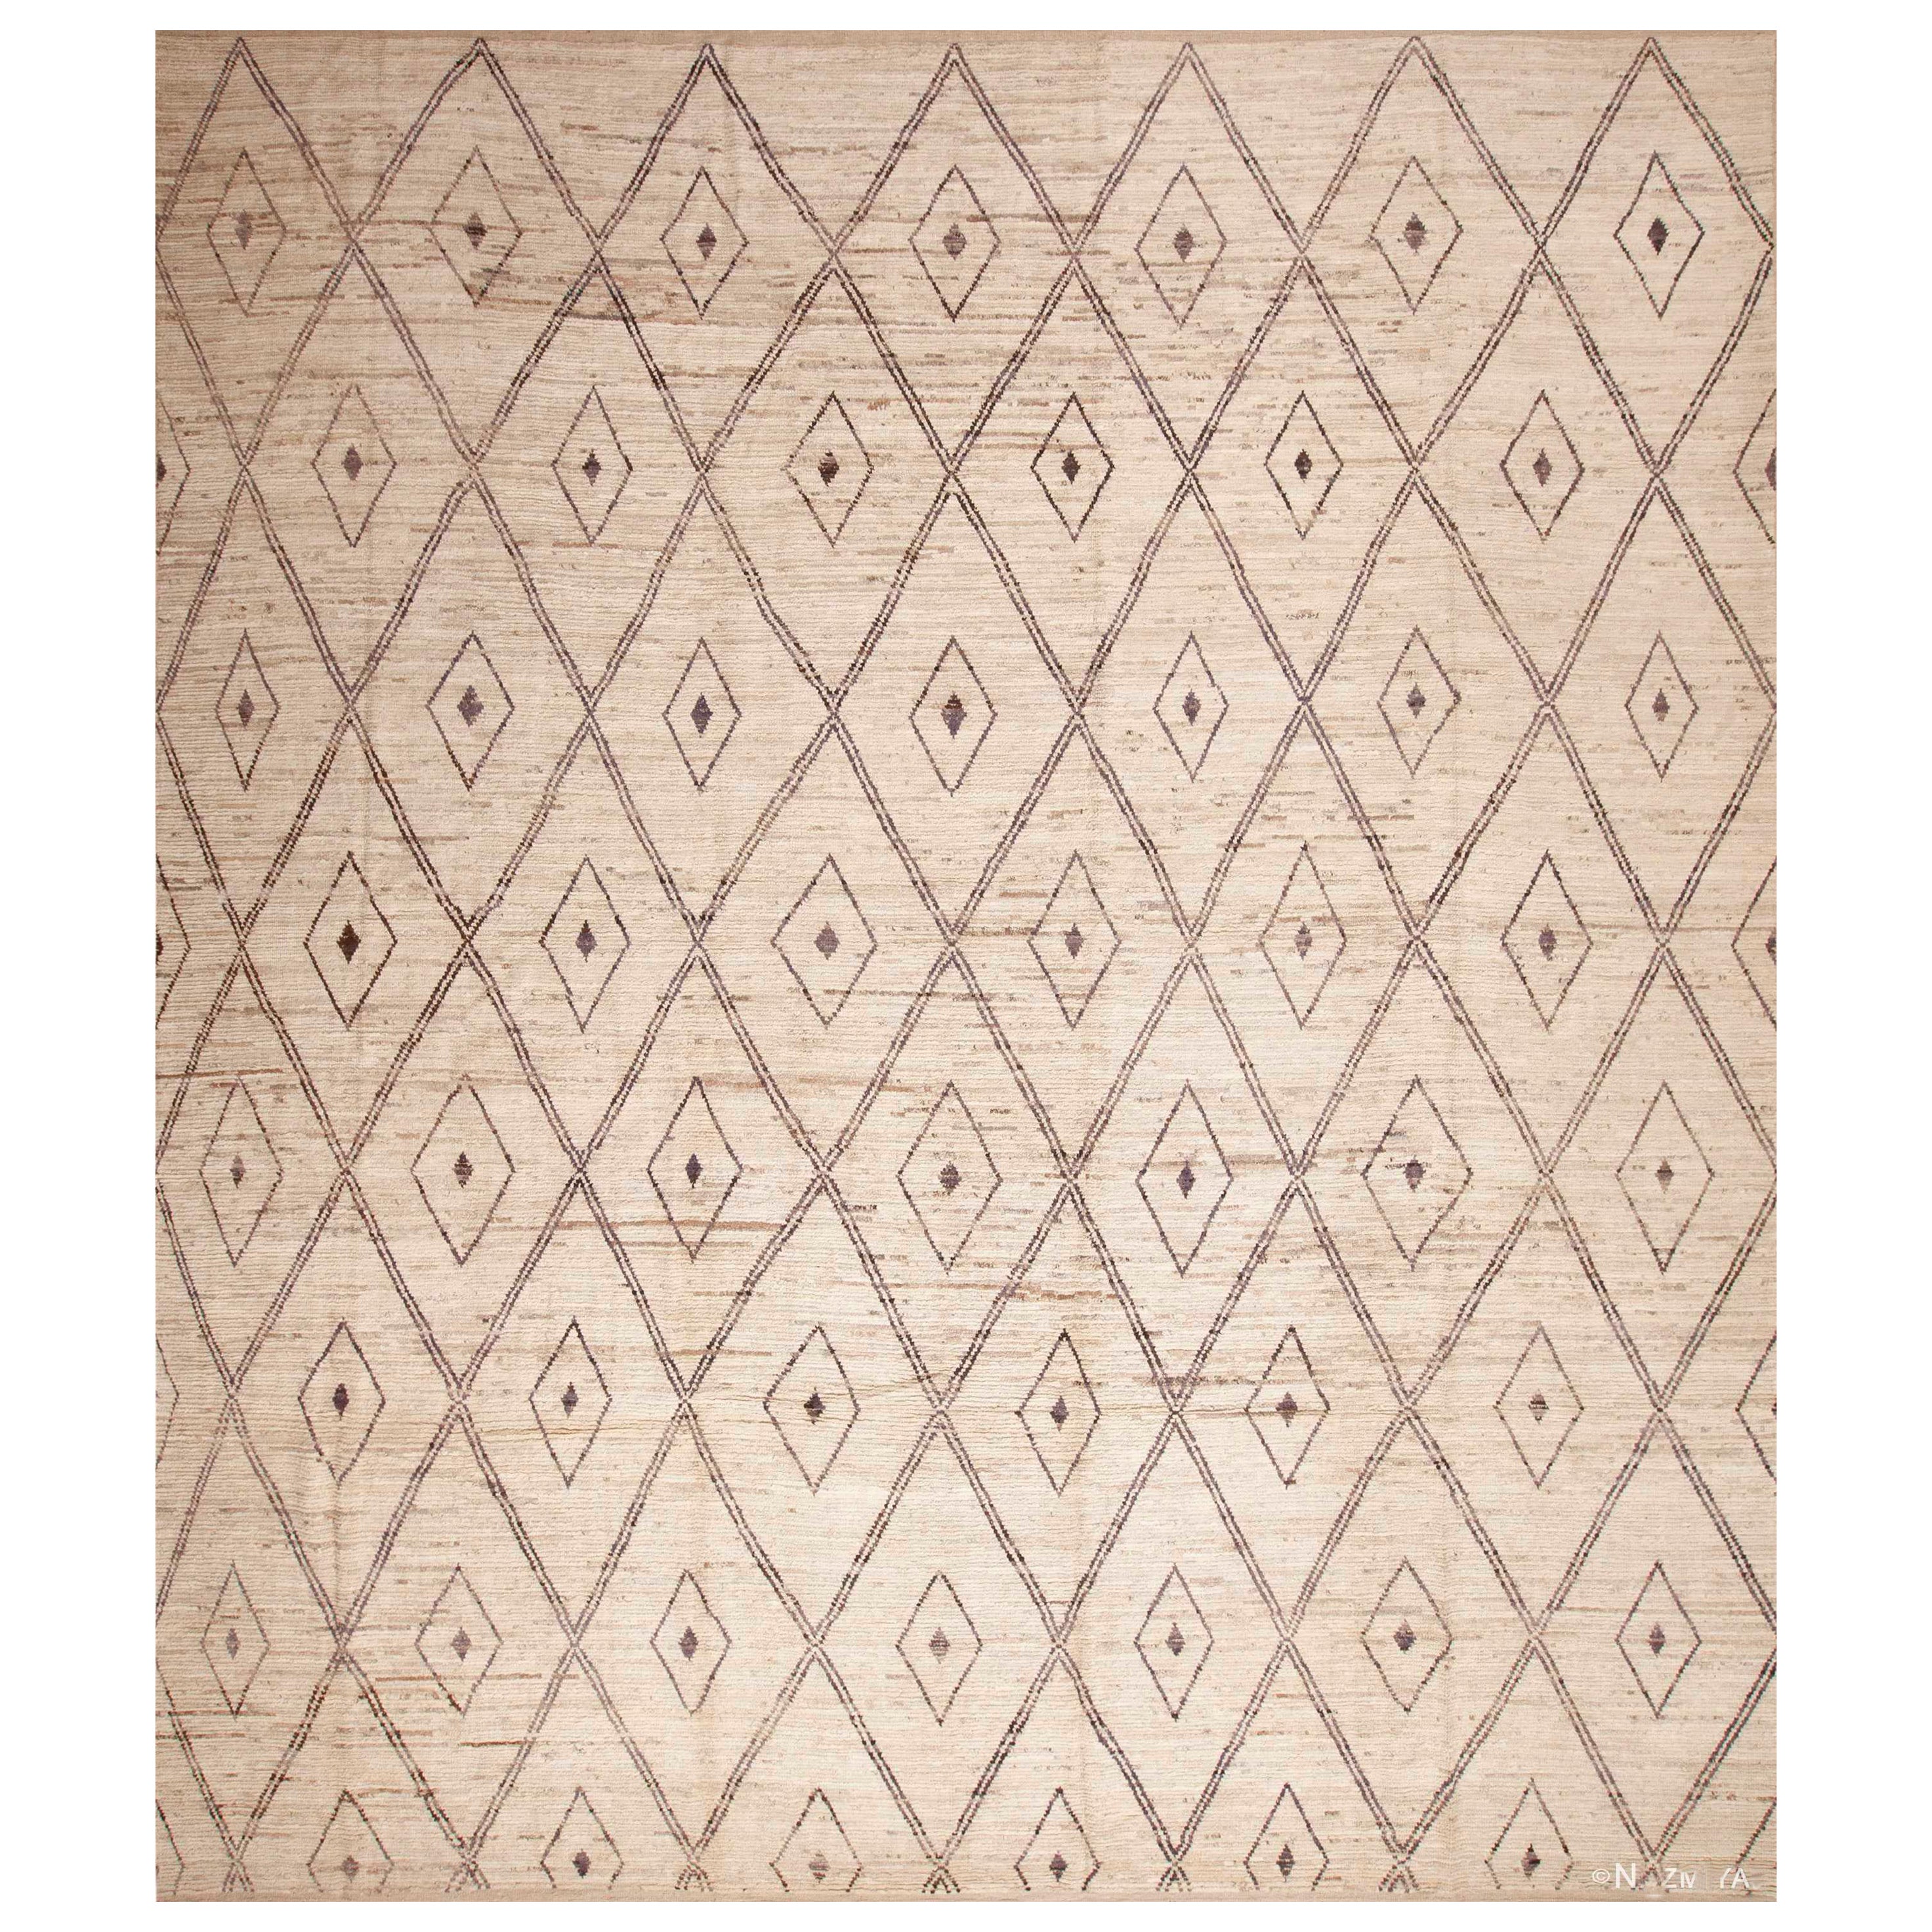 Tapis Beni Ourain de la collection Nazmiyal, motif tribal berbère moderne, 13'9" x 15'10"